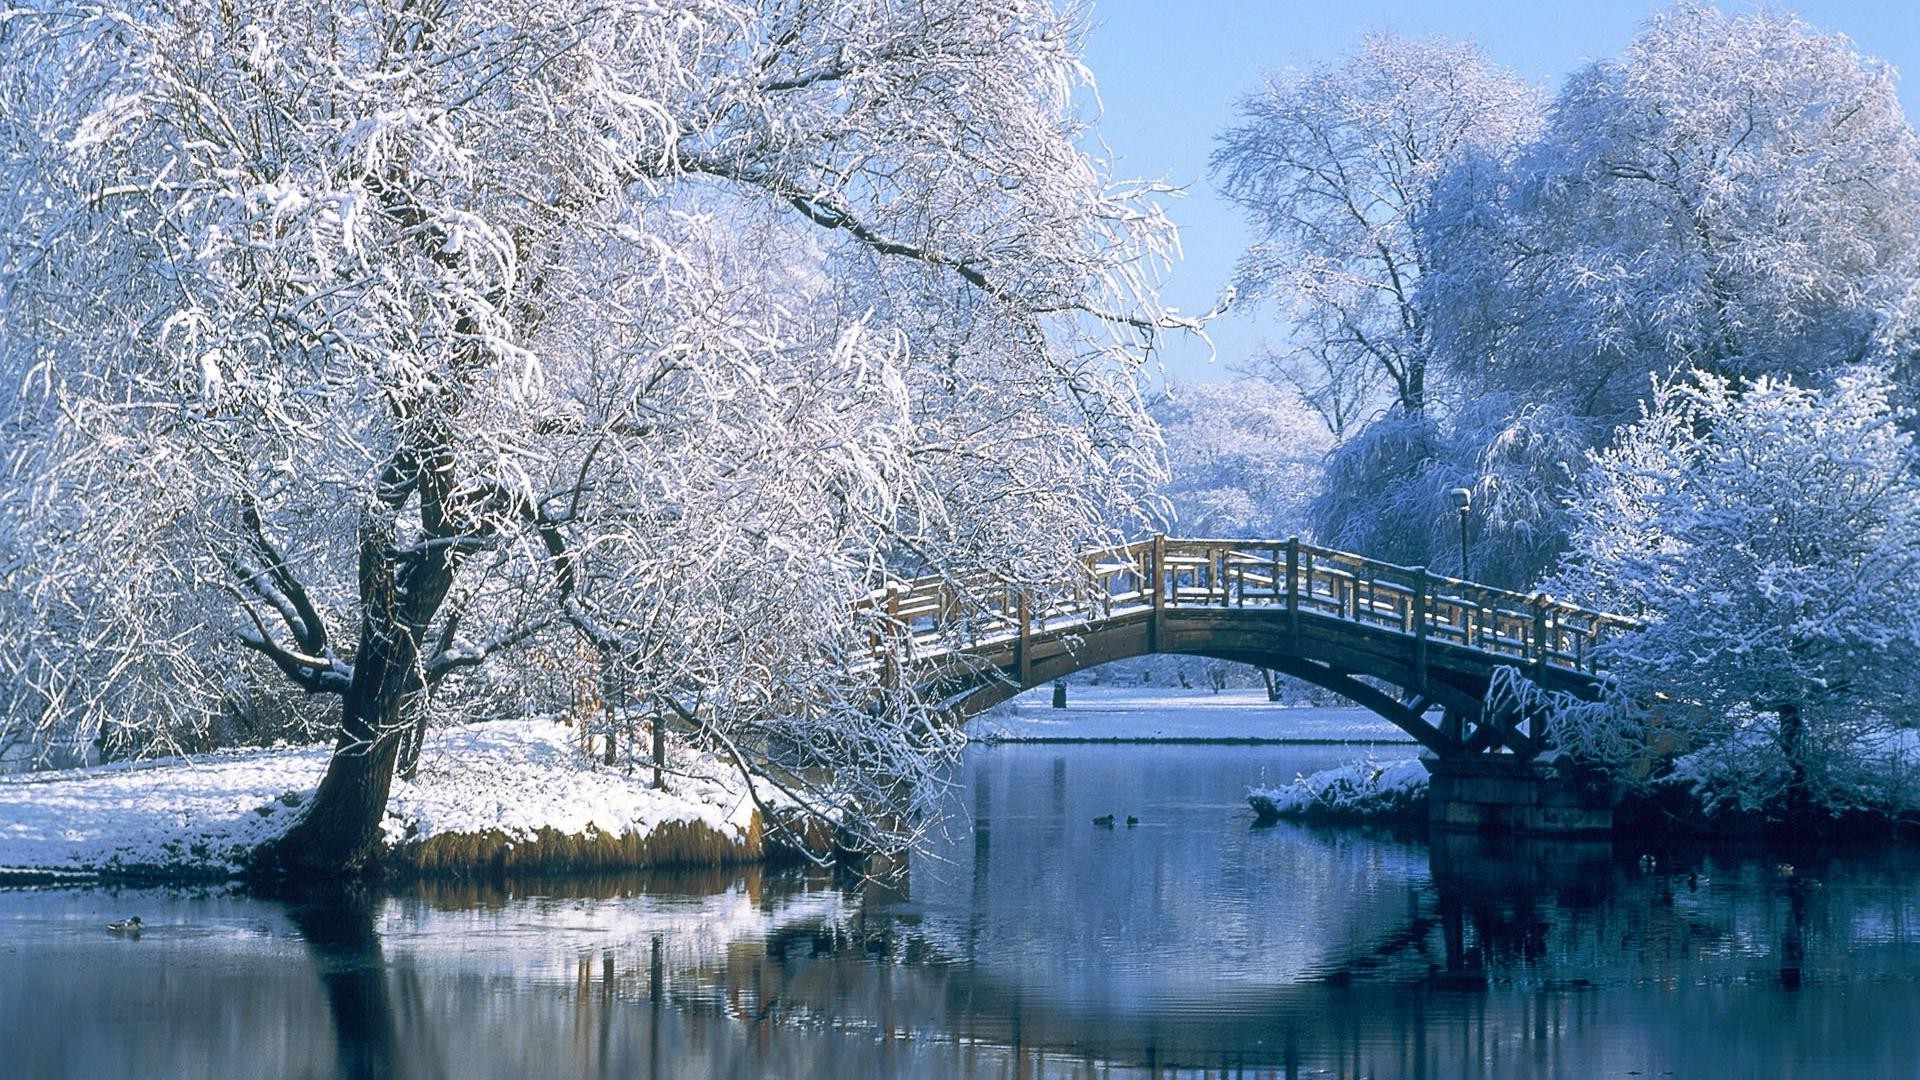 зима снег дерево воды мороз холодная природа лед пейзаж древесины замороженные отражение на открытом воздухе мост путешествия парк